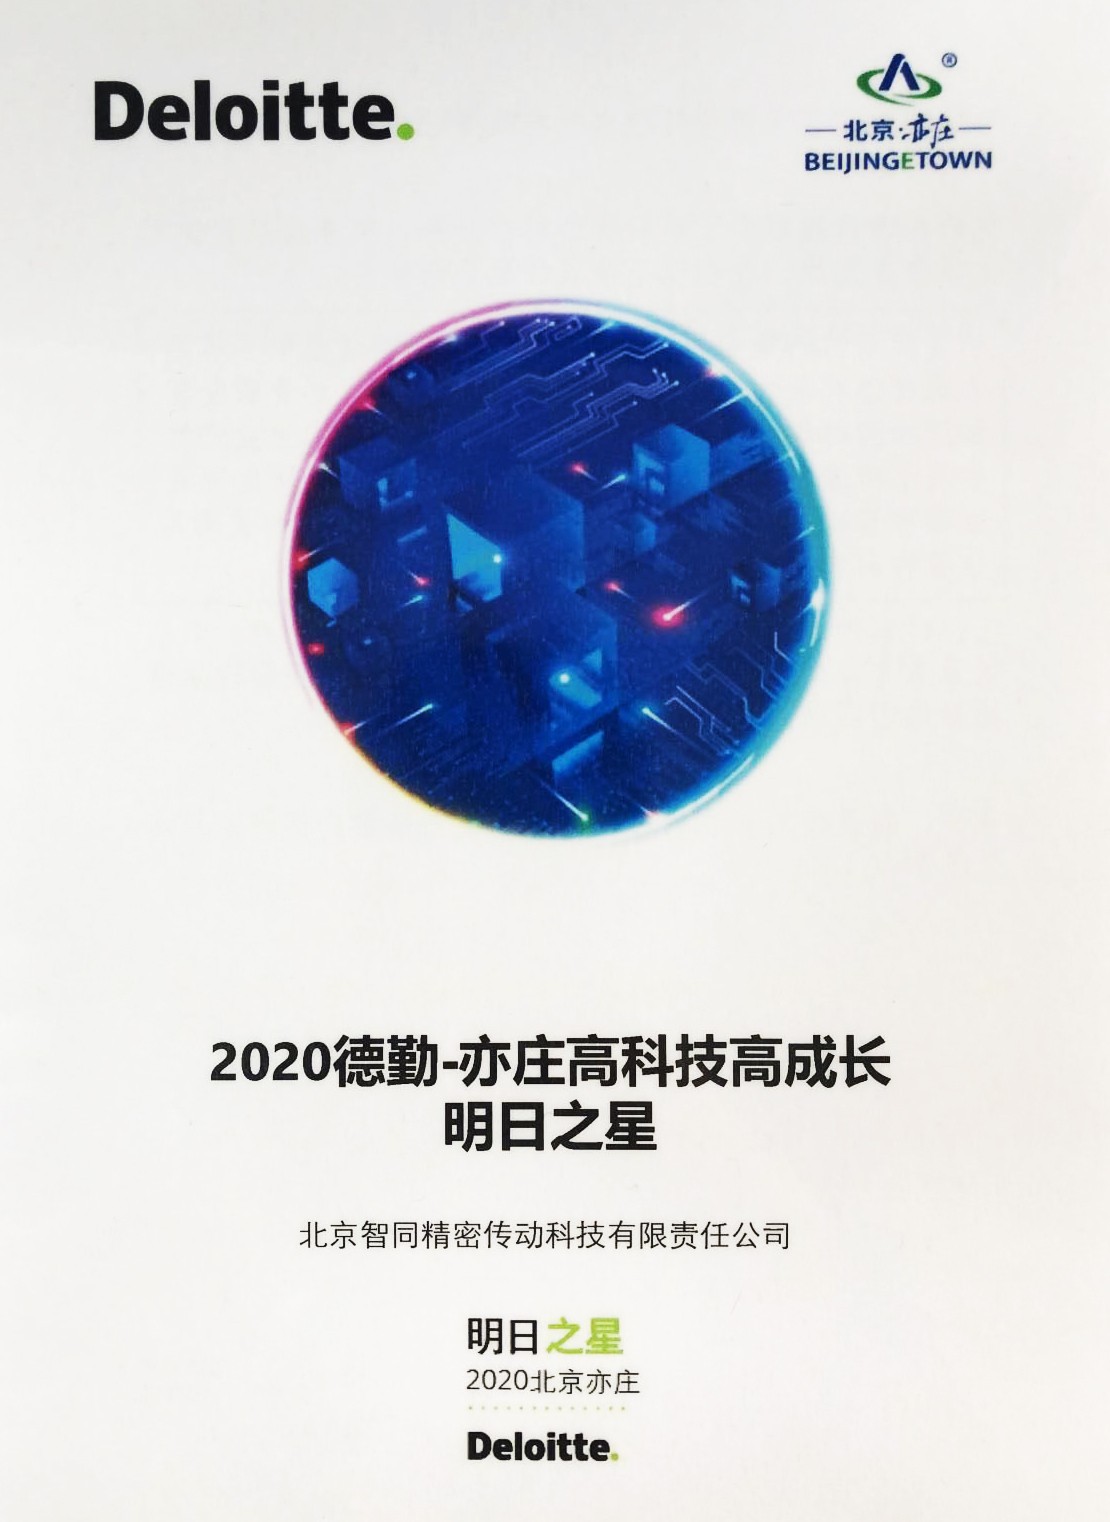 智同科技-2020年德勤亦庄高科技高成长明日之星证书.jpg